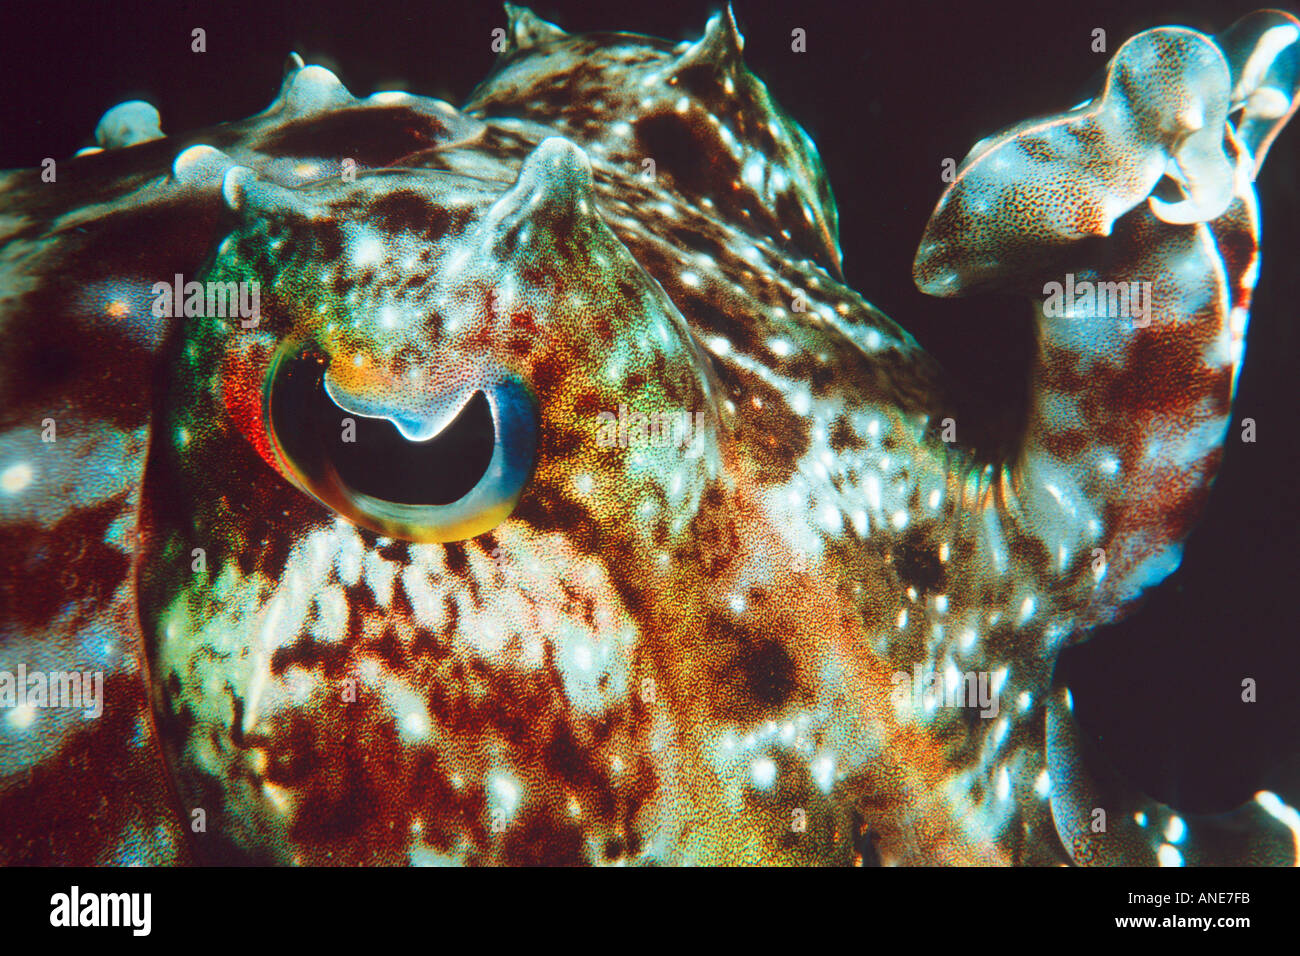 Cutlefish Récifs coralliens Harrier sp Sépia Grande Barrière de corail en Australie Pacifique S Banque D'Images